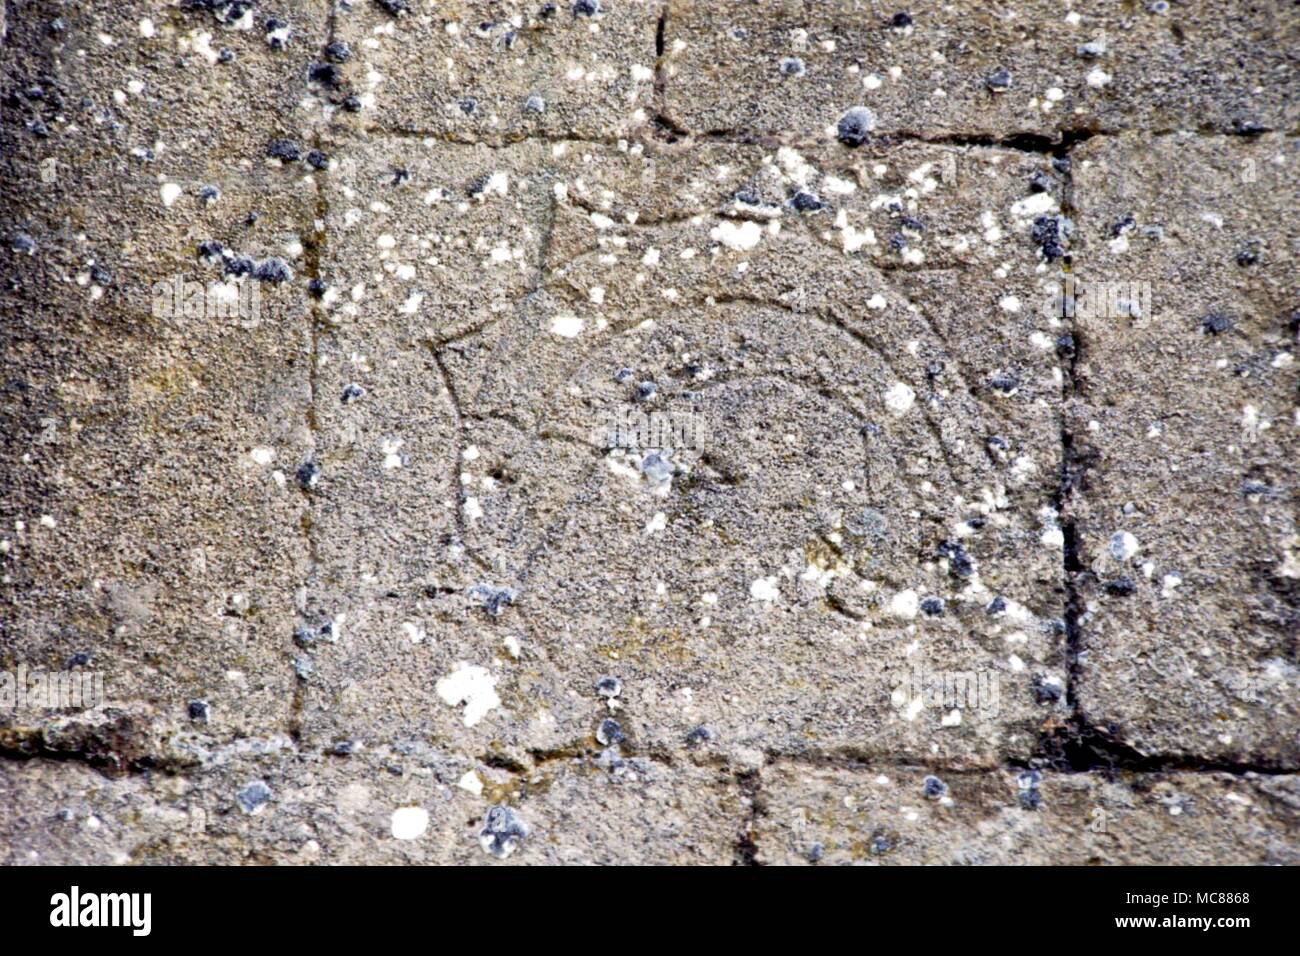 GLASTONBURY Heilige Fisch graviert hoch an der Wand der ruinösen Katrin von Glastonbury. Den Stil würde vorschlagen, dass es im 14. Jahrhundert eingeschnitten wurde. Der Fisch ist ein Symbol für Christus Stockfoto